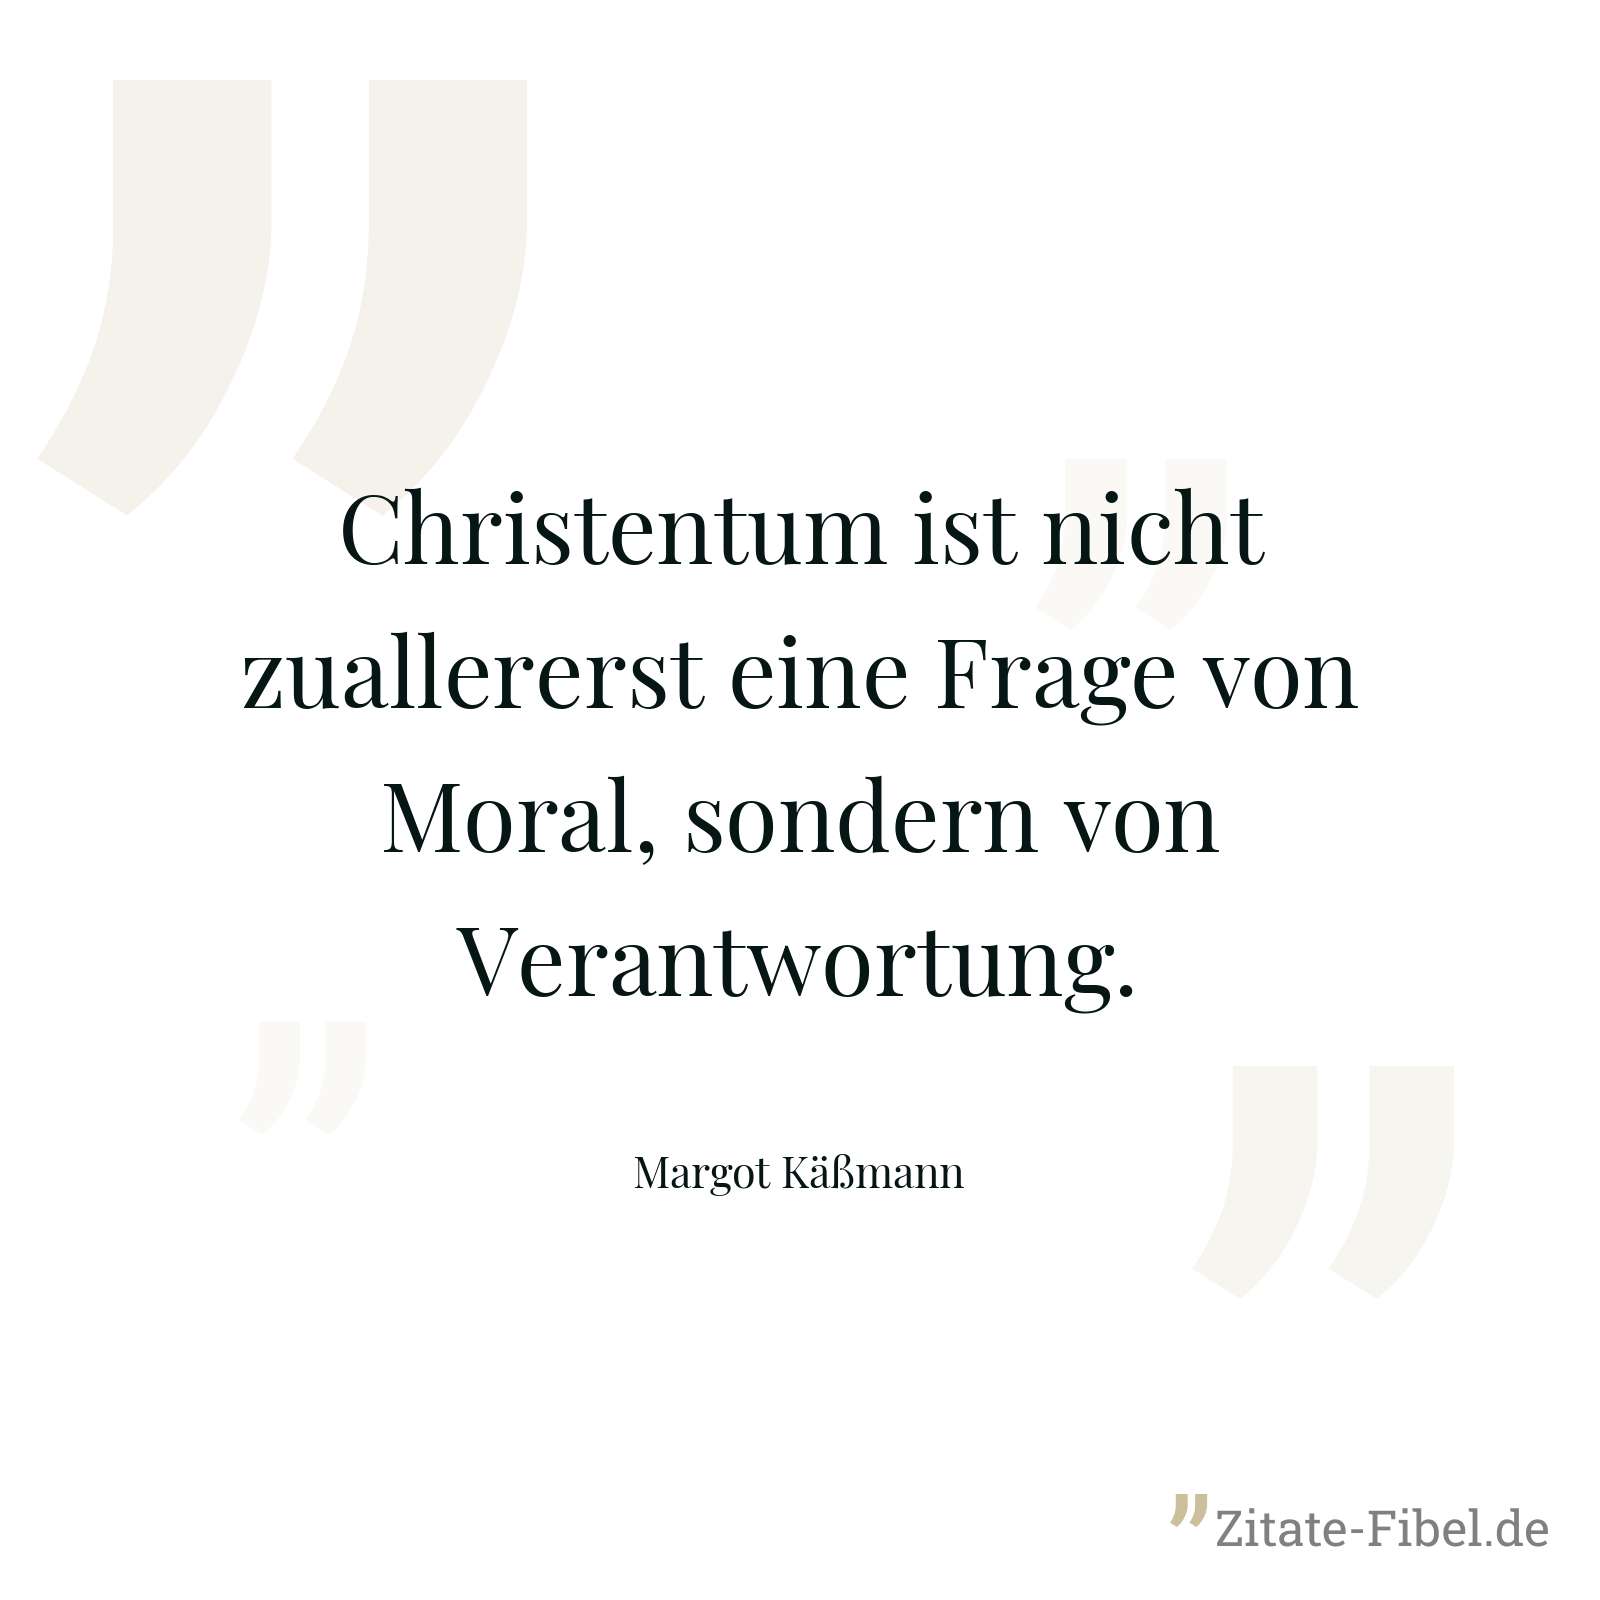 Christentum ist nicht zuallererst eine Frage von Moral, sondern von Verantwortung. - Margot Käßmann